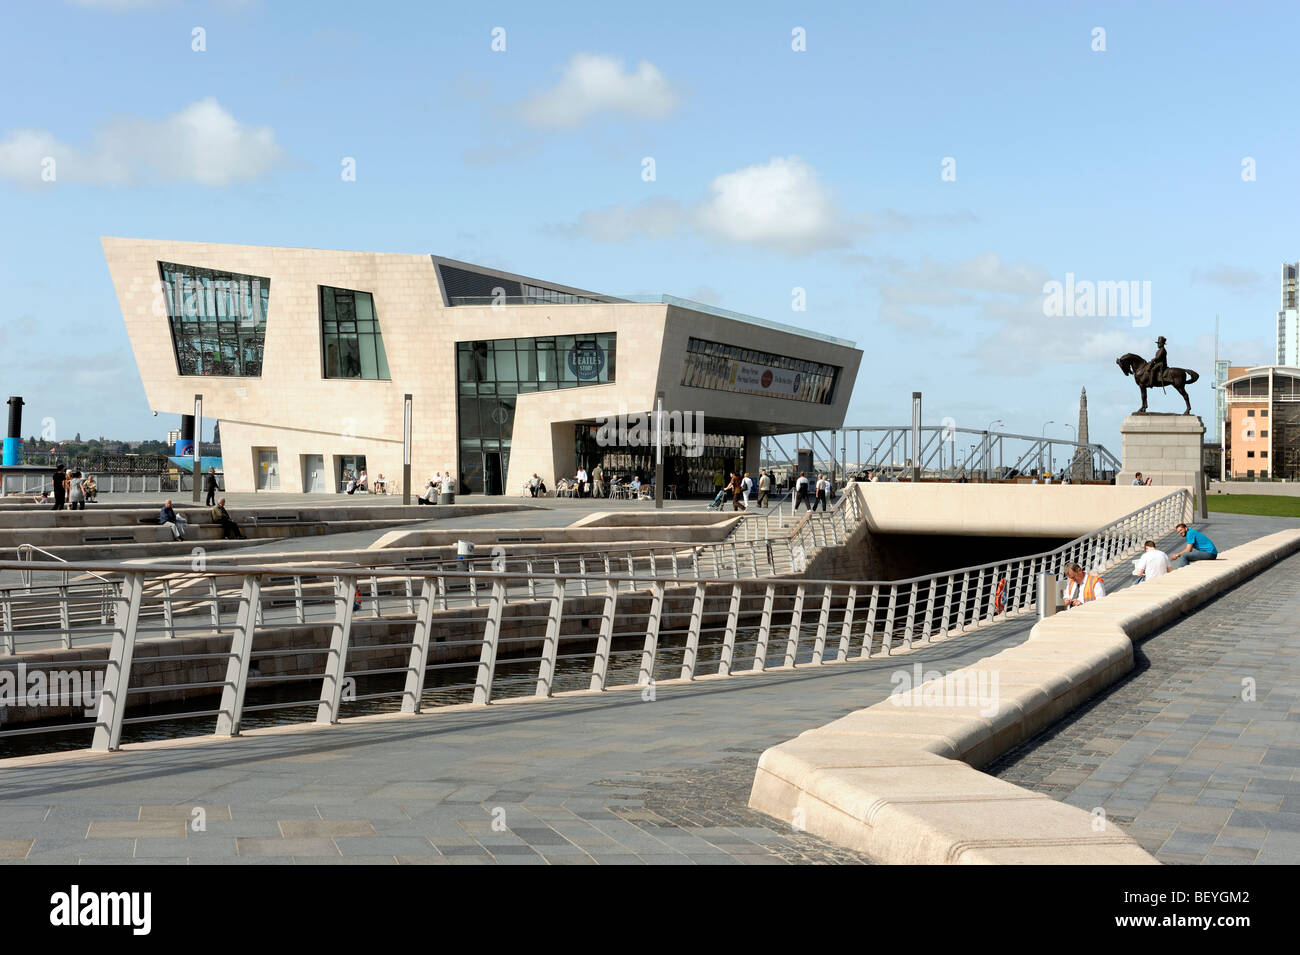 The Beatles Story et le Terminal de Ferry Building Pier Head Liverpool Merseyside England UK Banque D'Images